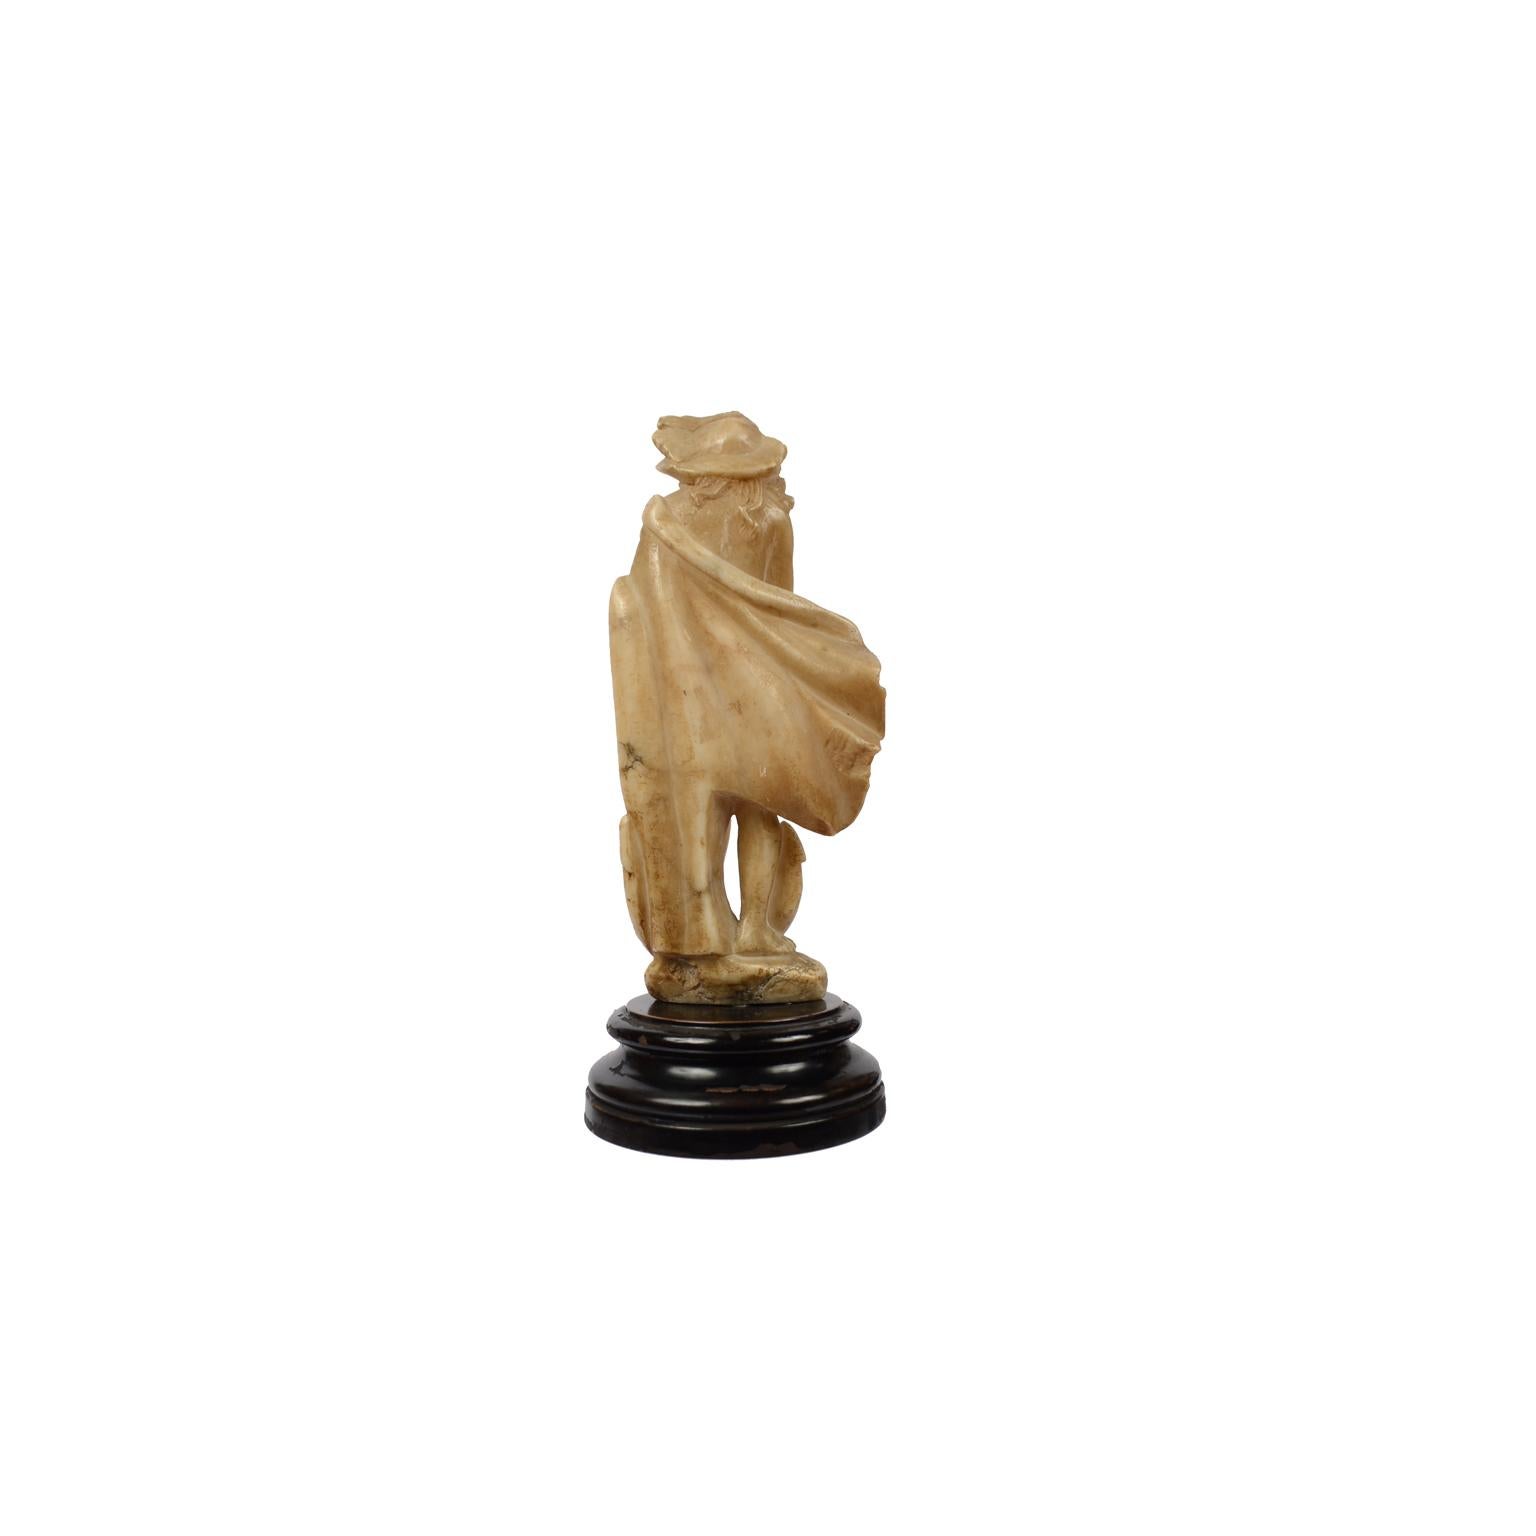 Sculpture en albâtre représentant une femme nue avec manteau et chapeau, les mains jointes et posant son pied sur une ancre, comme pour invoquer la protection des marins ; fabrication française du milieu du XVIIIe siècle. Conditions passables